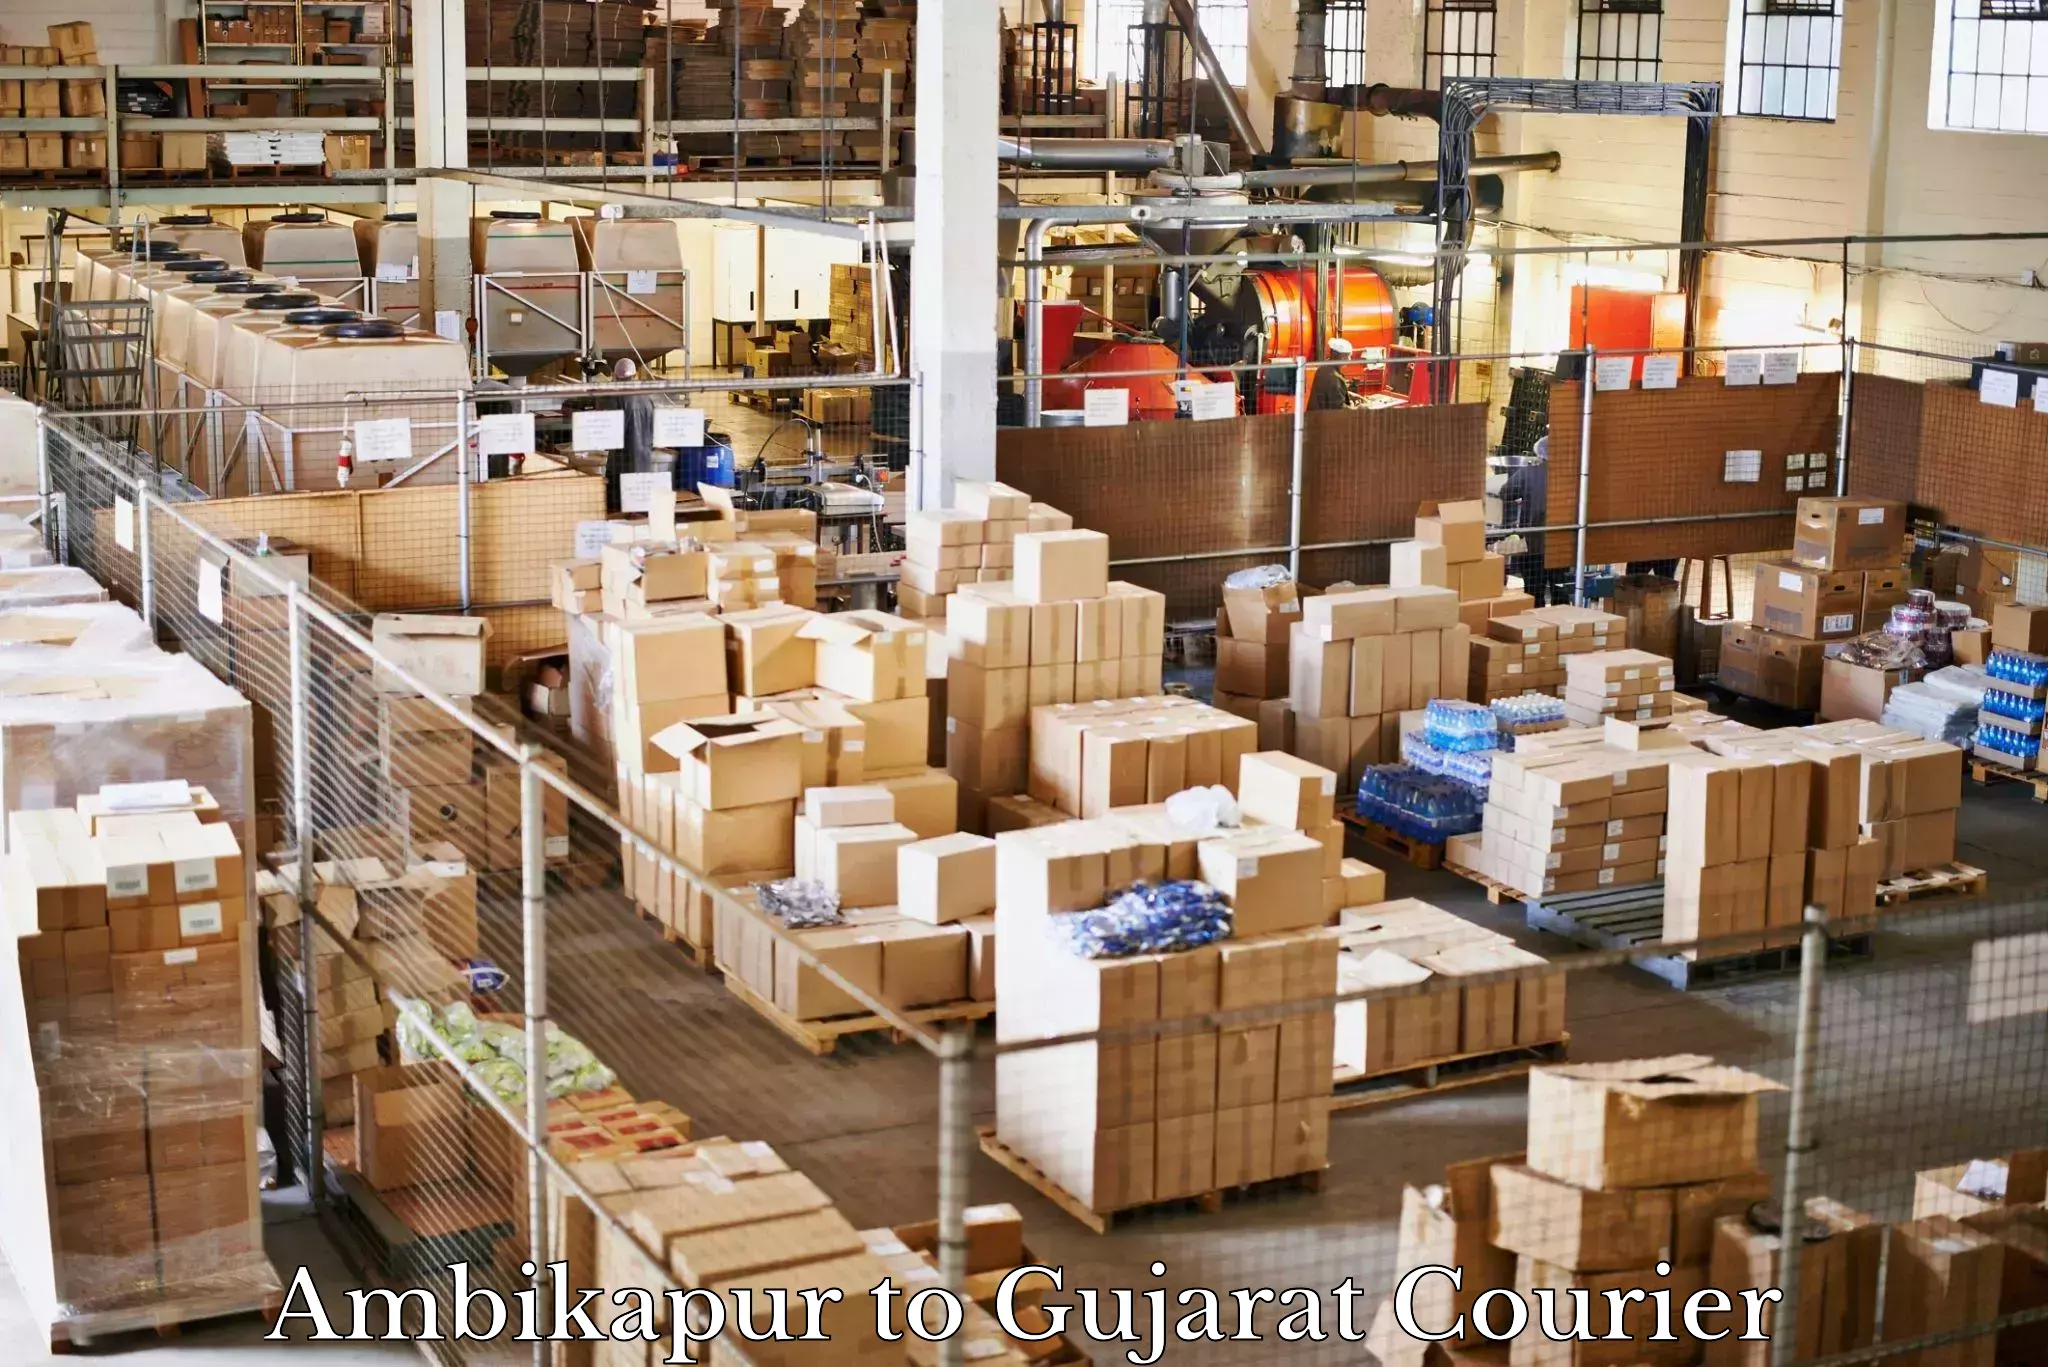 Furniture transport specialists Ambikapur to Gujarat